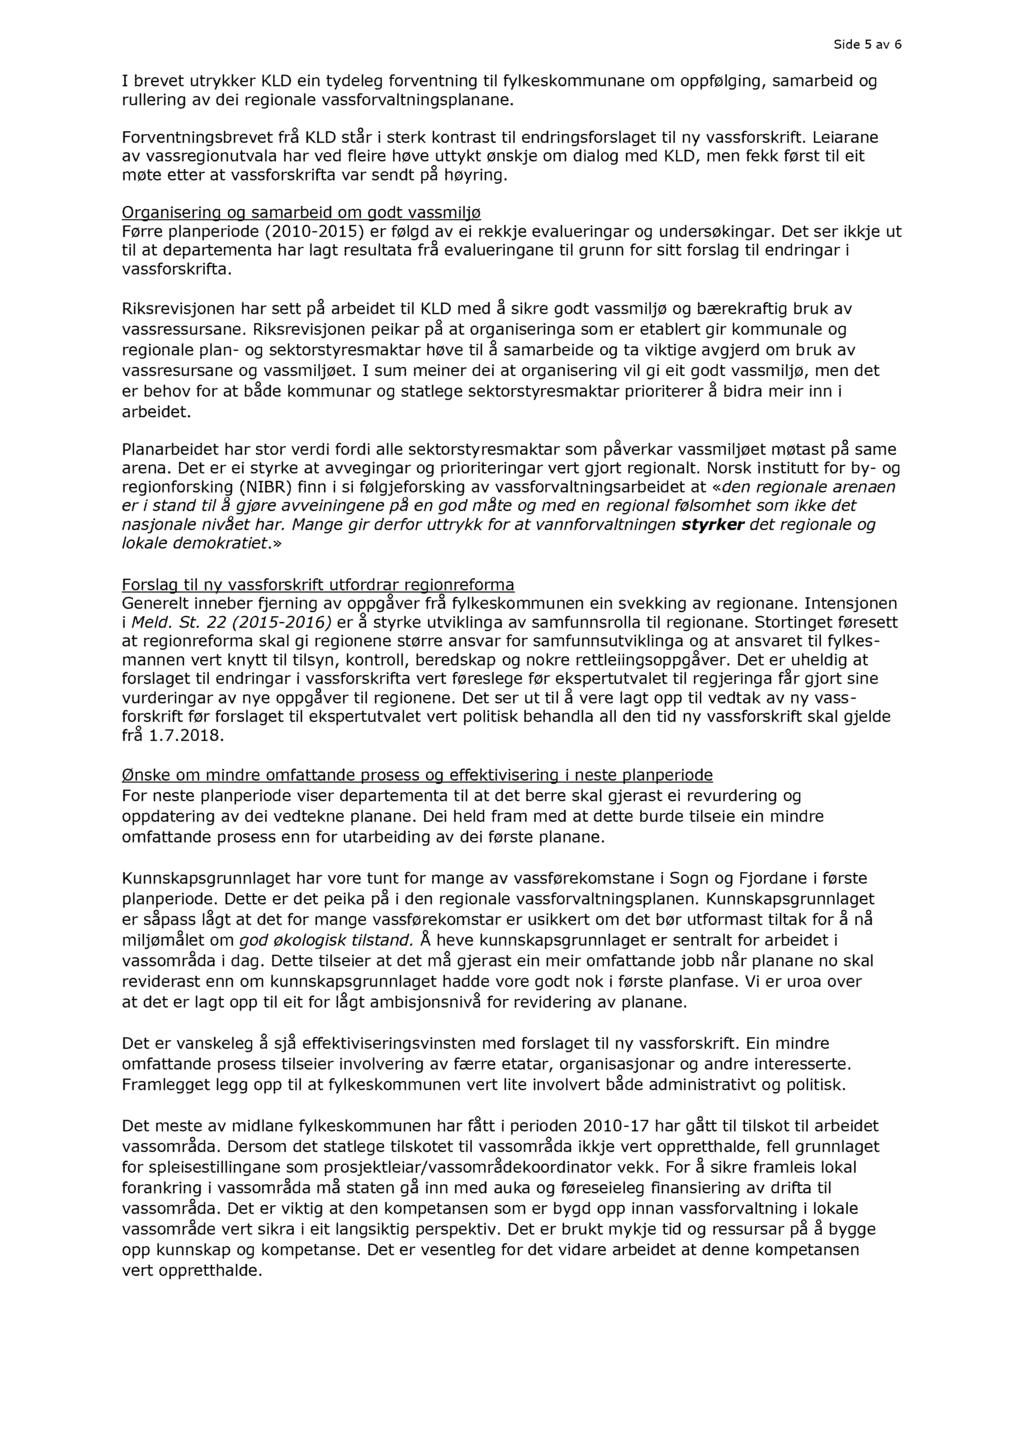 Side 5 av 6 I brevet utrykker KLD ein tydeleg forventning til fylkeskommunane om oppfølging, samarbeid og rullering av dei regionale vassforvaltningsplanane.